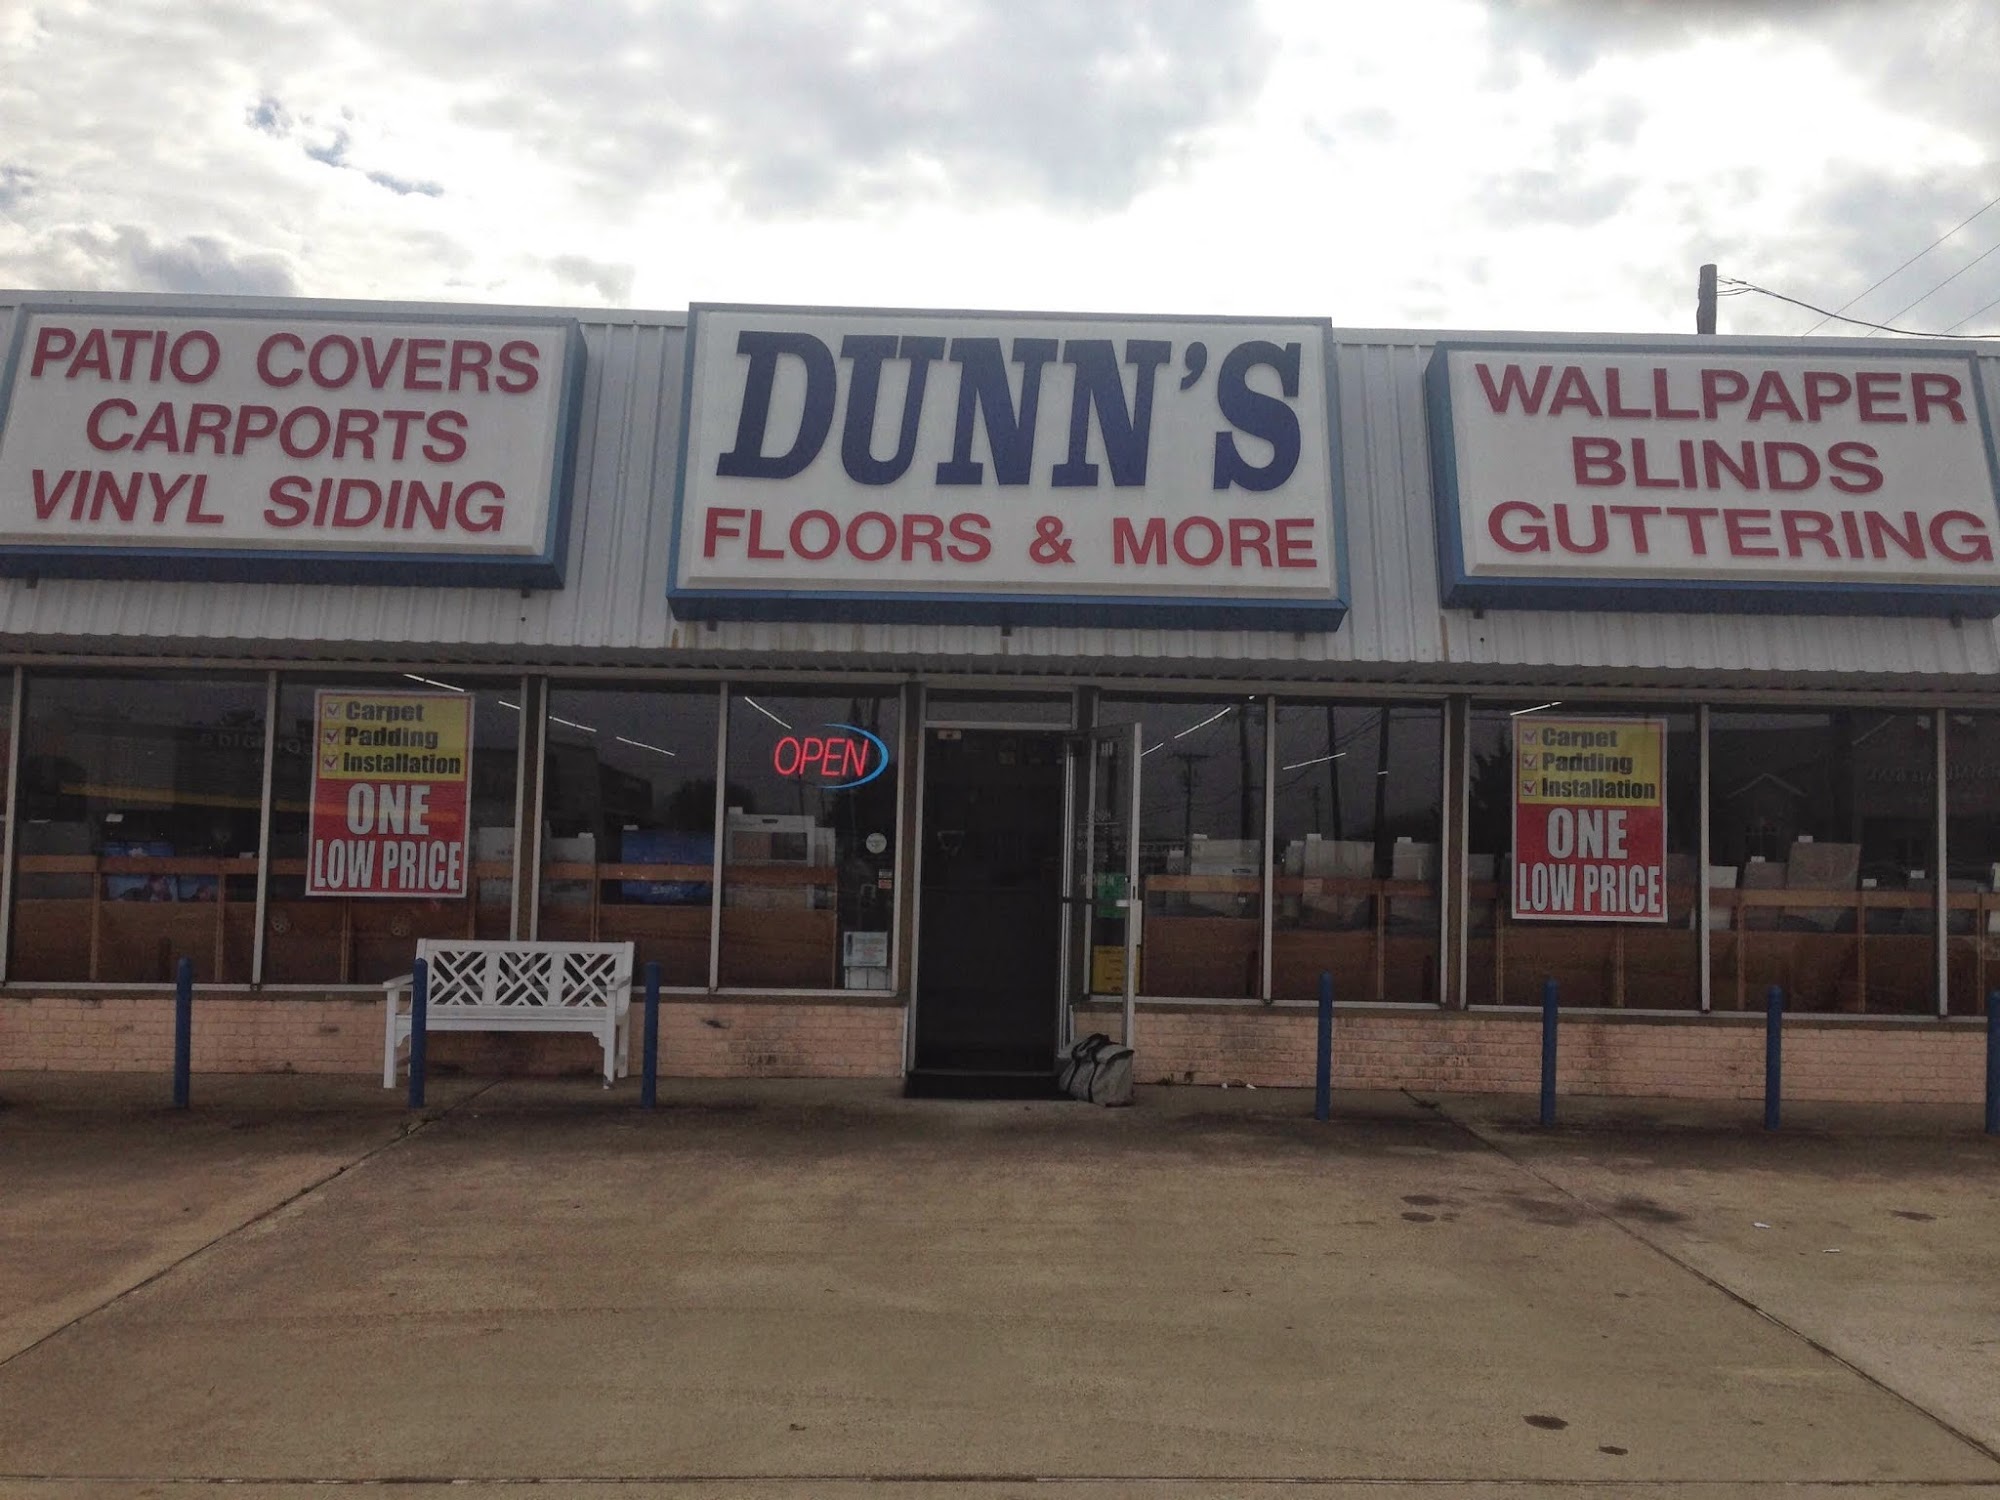 Dunn's Floors & More